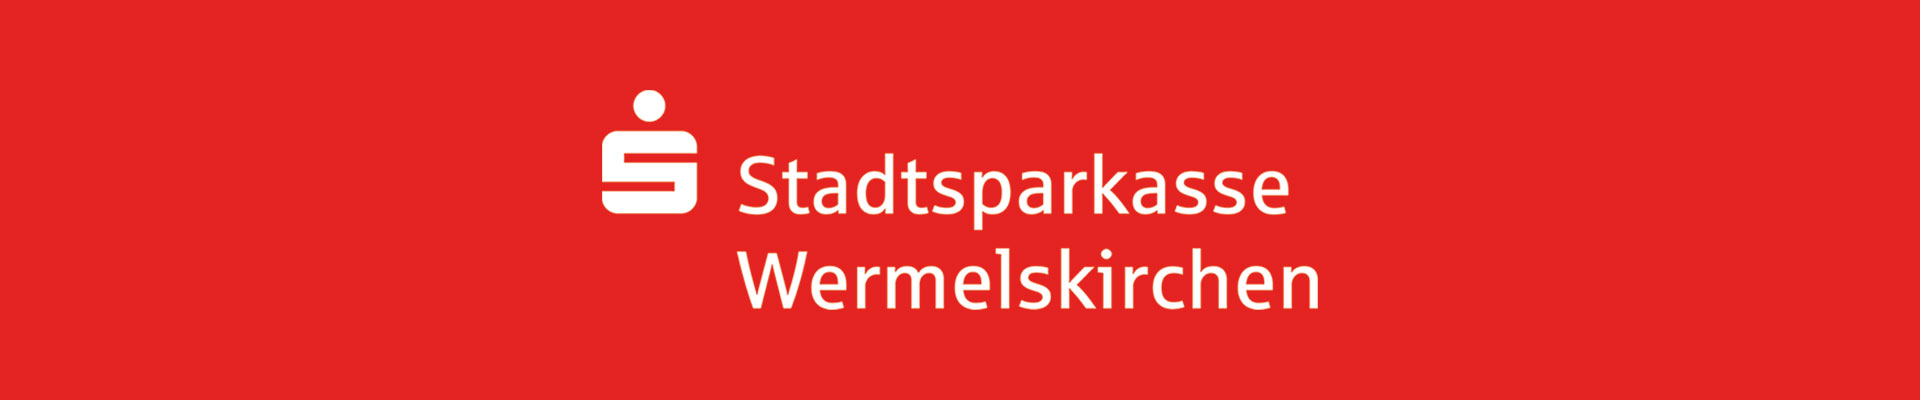 Werbepartner SSK Wermelskirchen